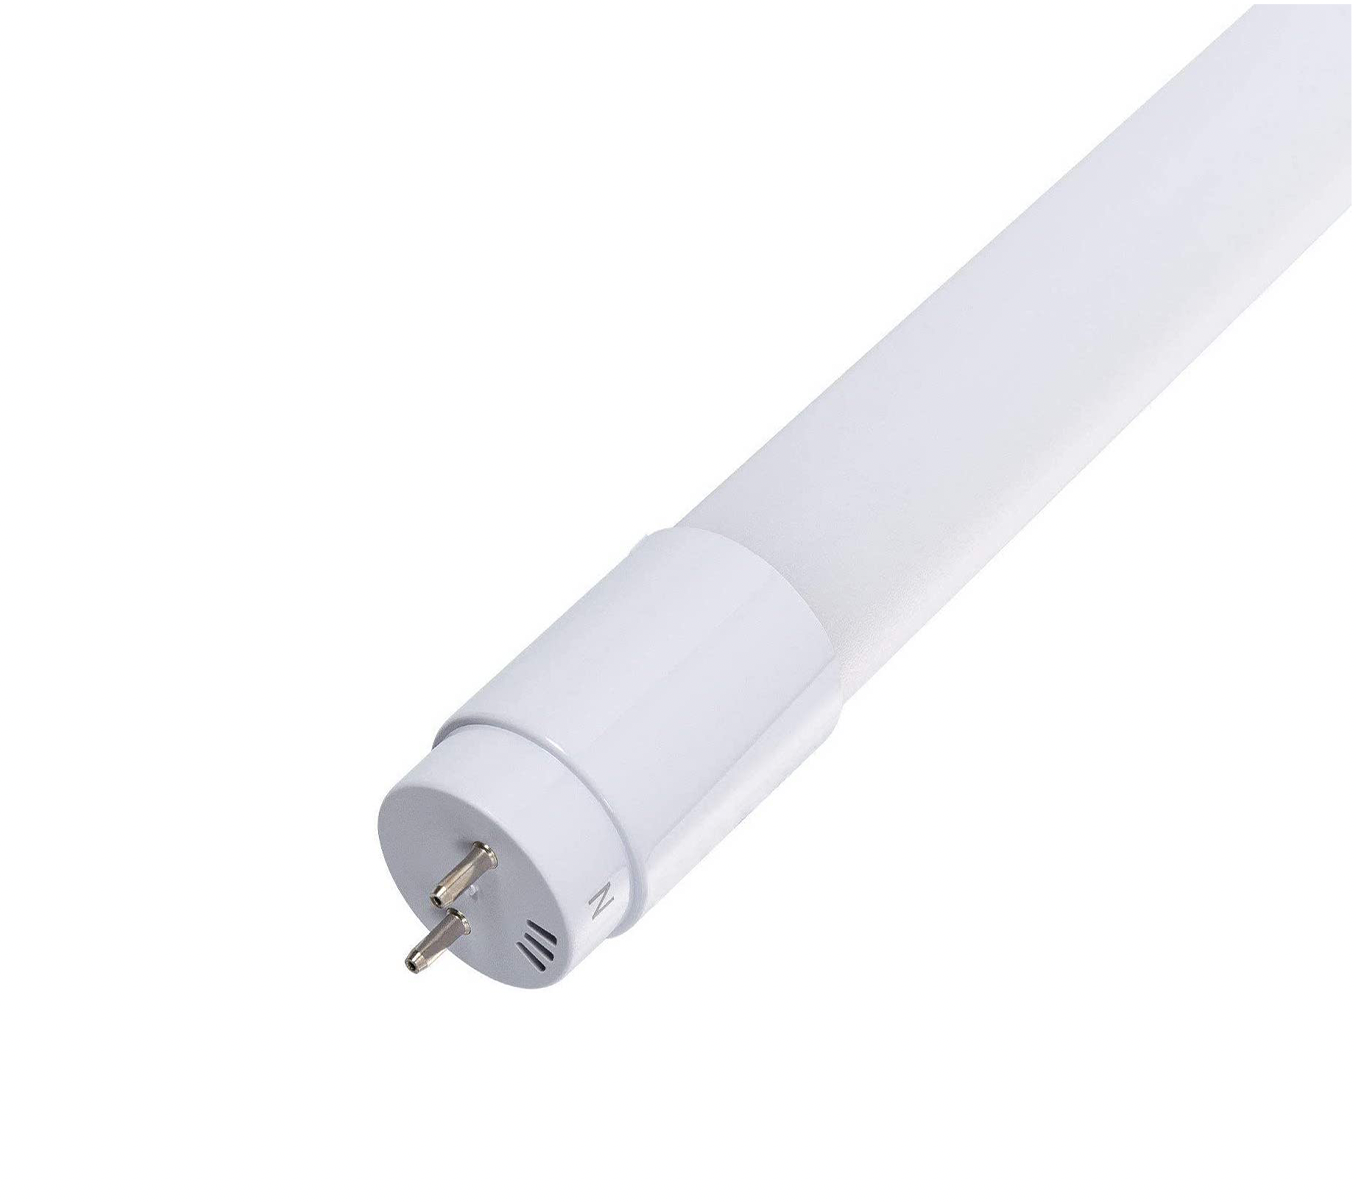 ergens bij betrokken zijn Aankondiging genoeg LED TL buis 60cm - 9W vervangt 18W - 3000K (830) warm wit licht -  Ledlichtdiscounter.nl